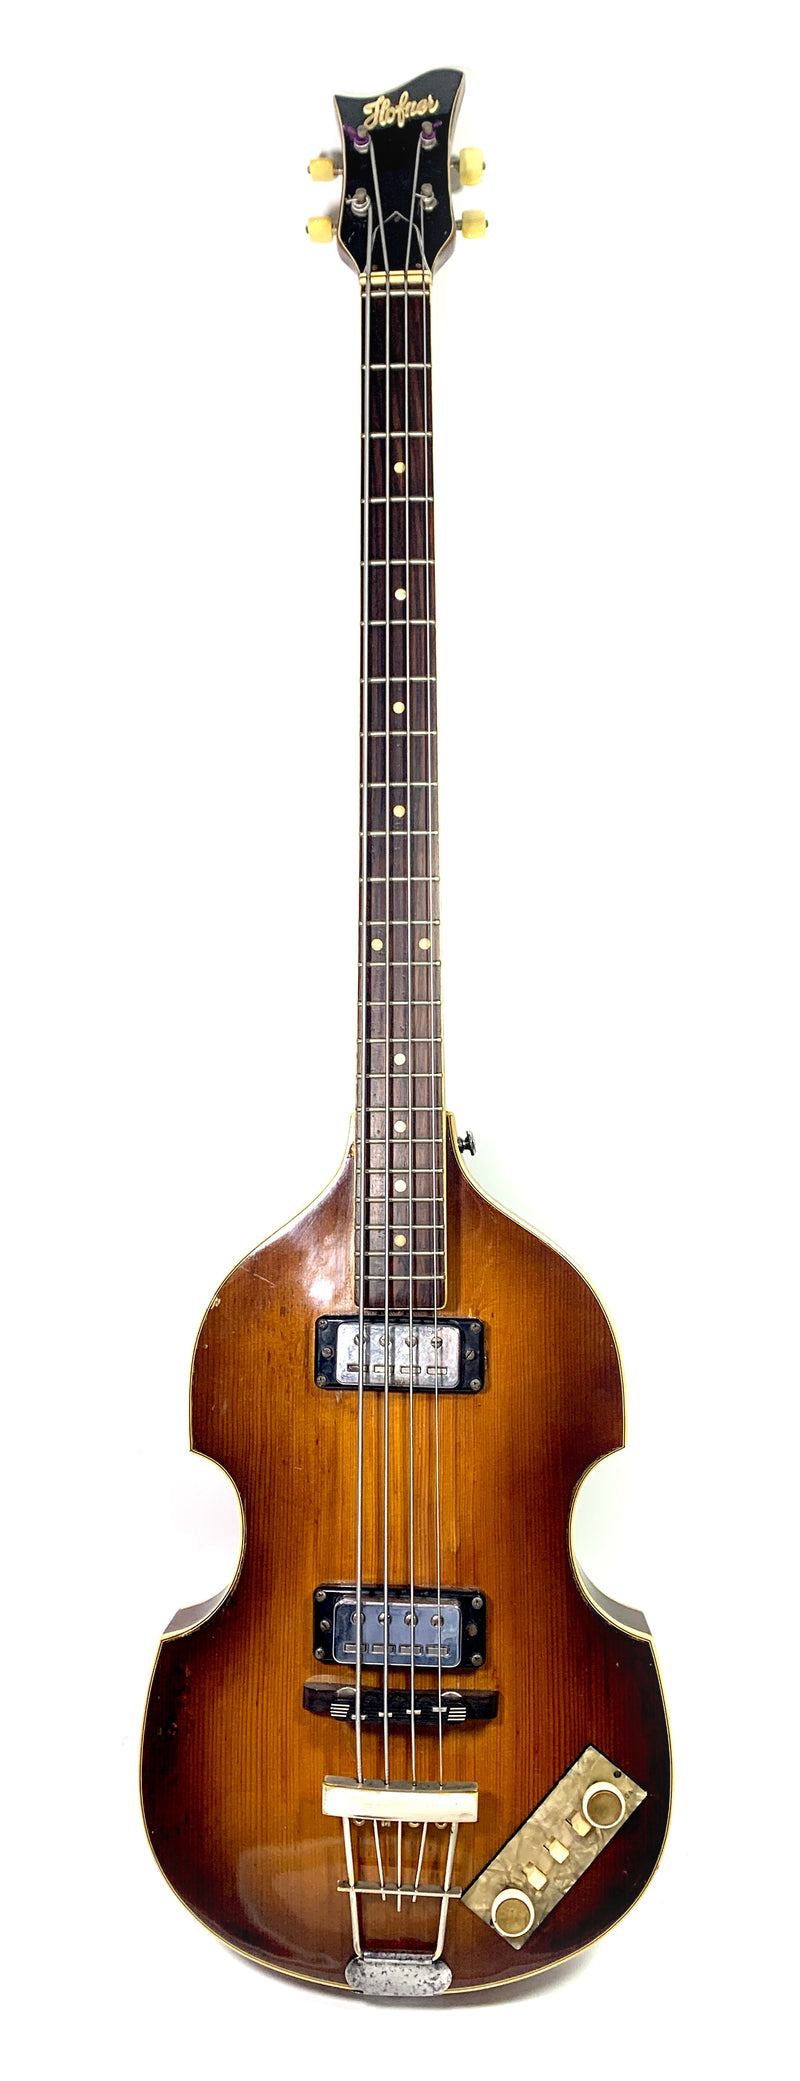 Höfner Violin Bass 500/1 from 1965